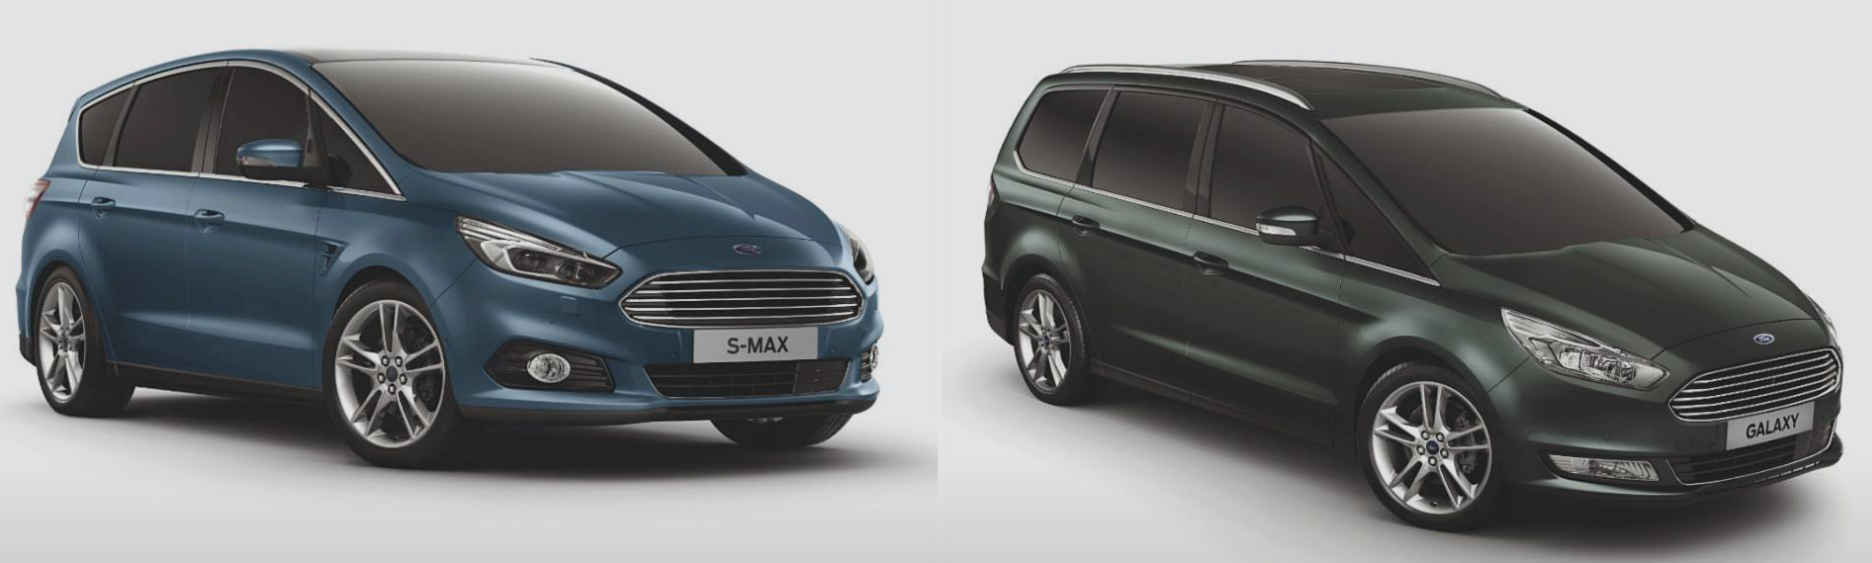 Ford Galaxy ve S-Max'e yeni dizel seçenekler eklendi